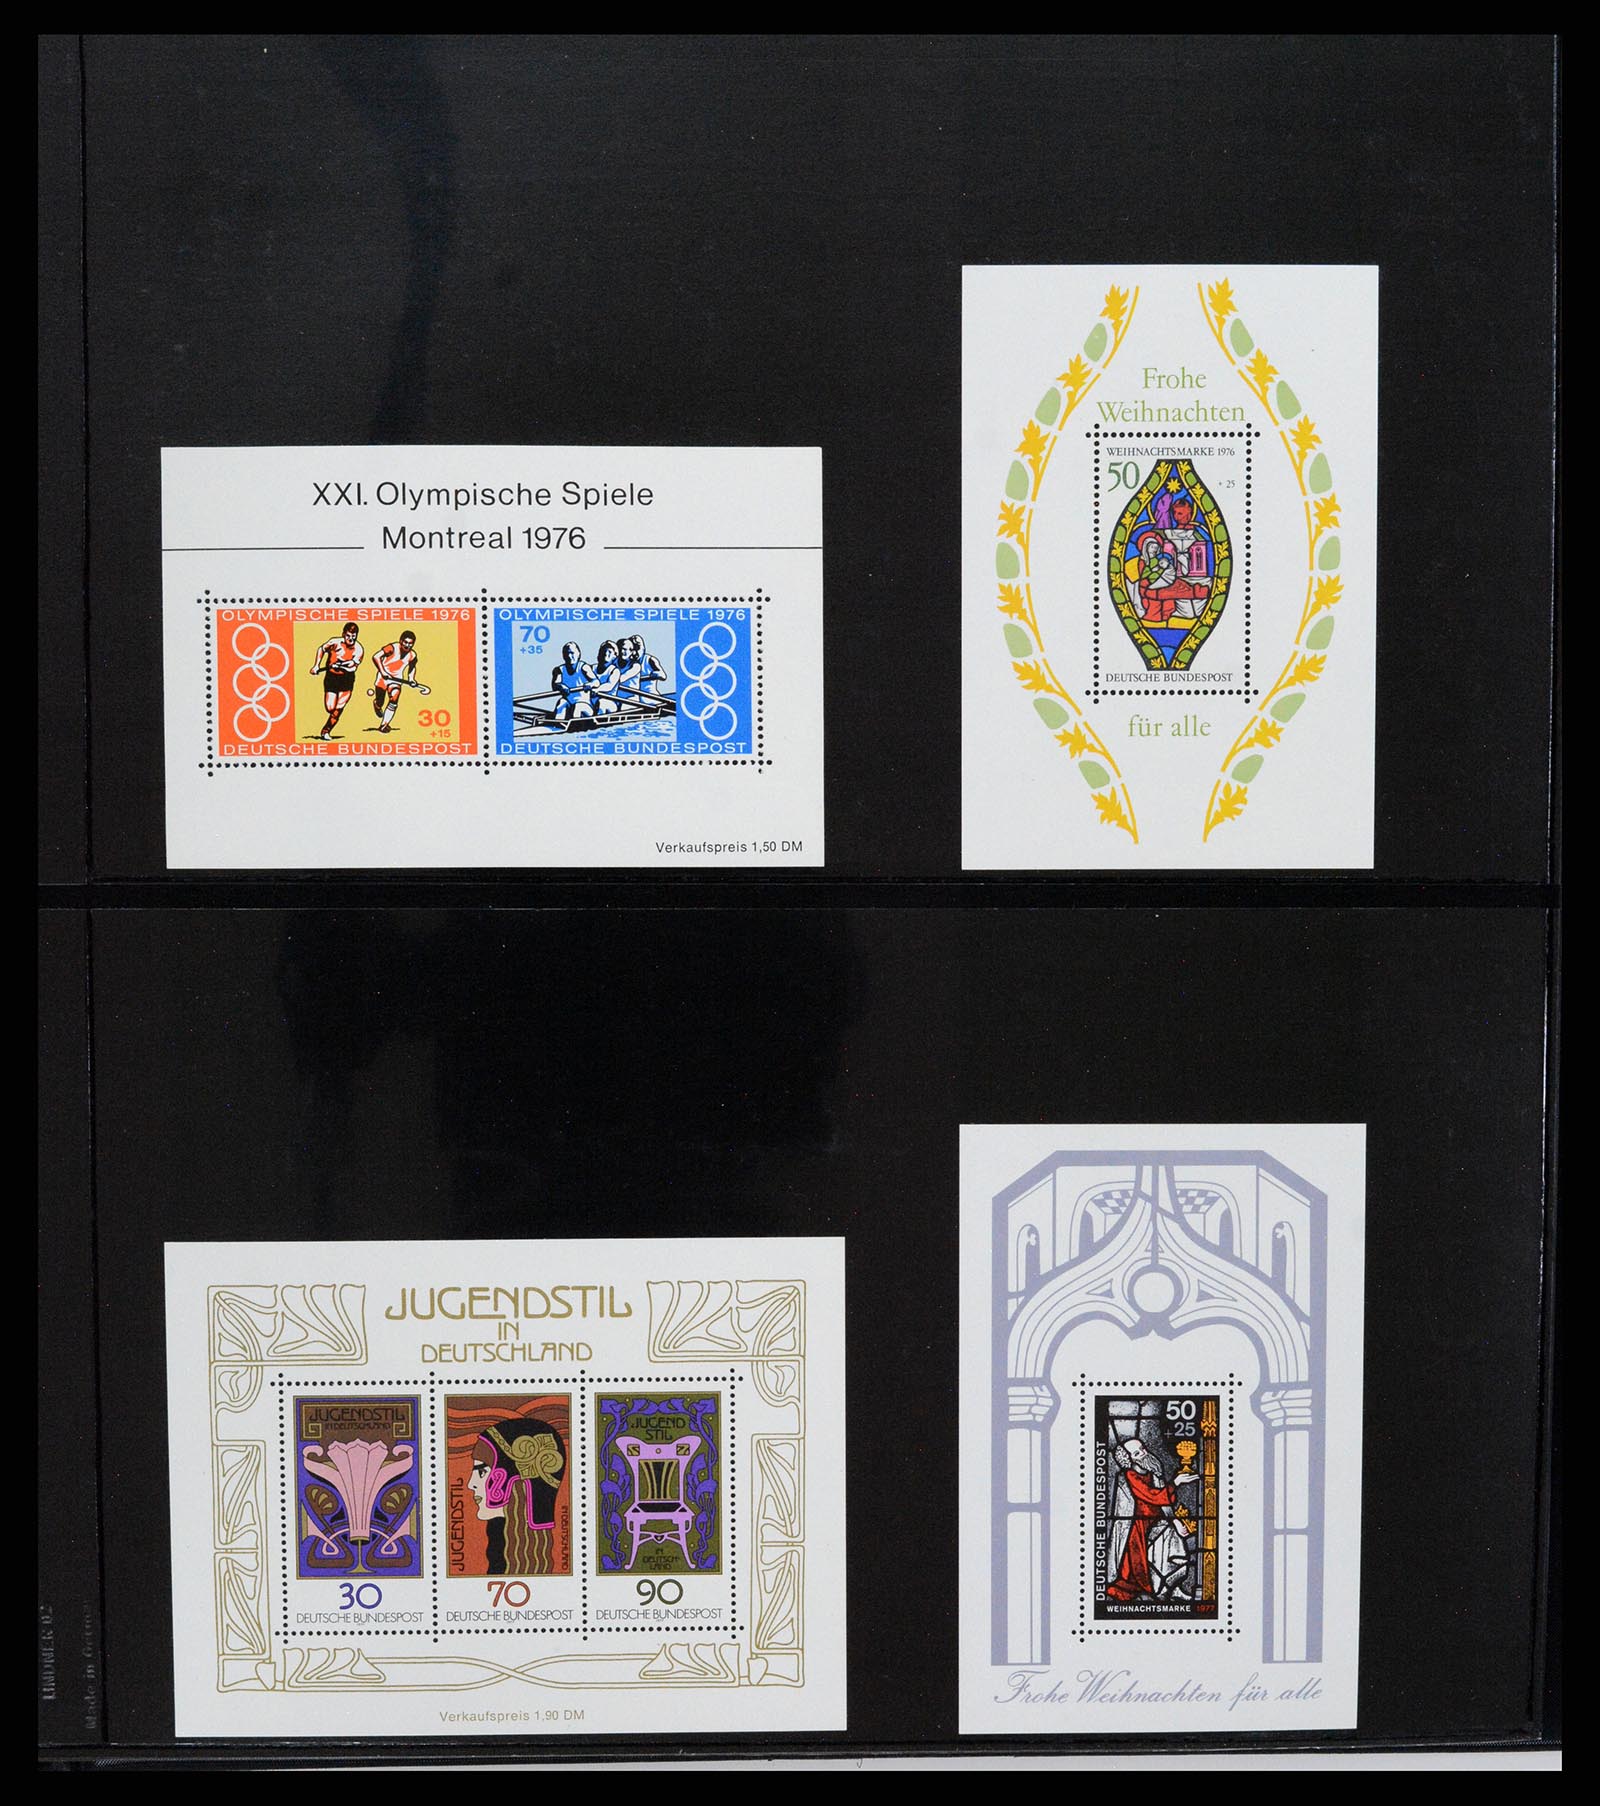 37345 035 - Stamp collection 37345 European countries souvenir sheets.